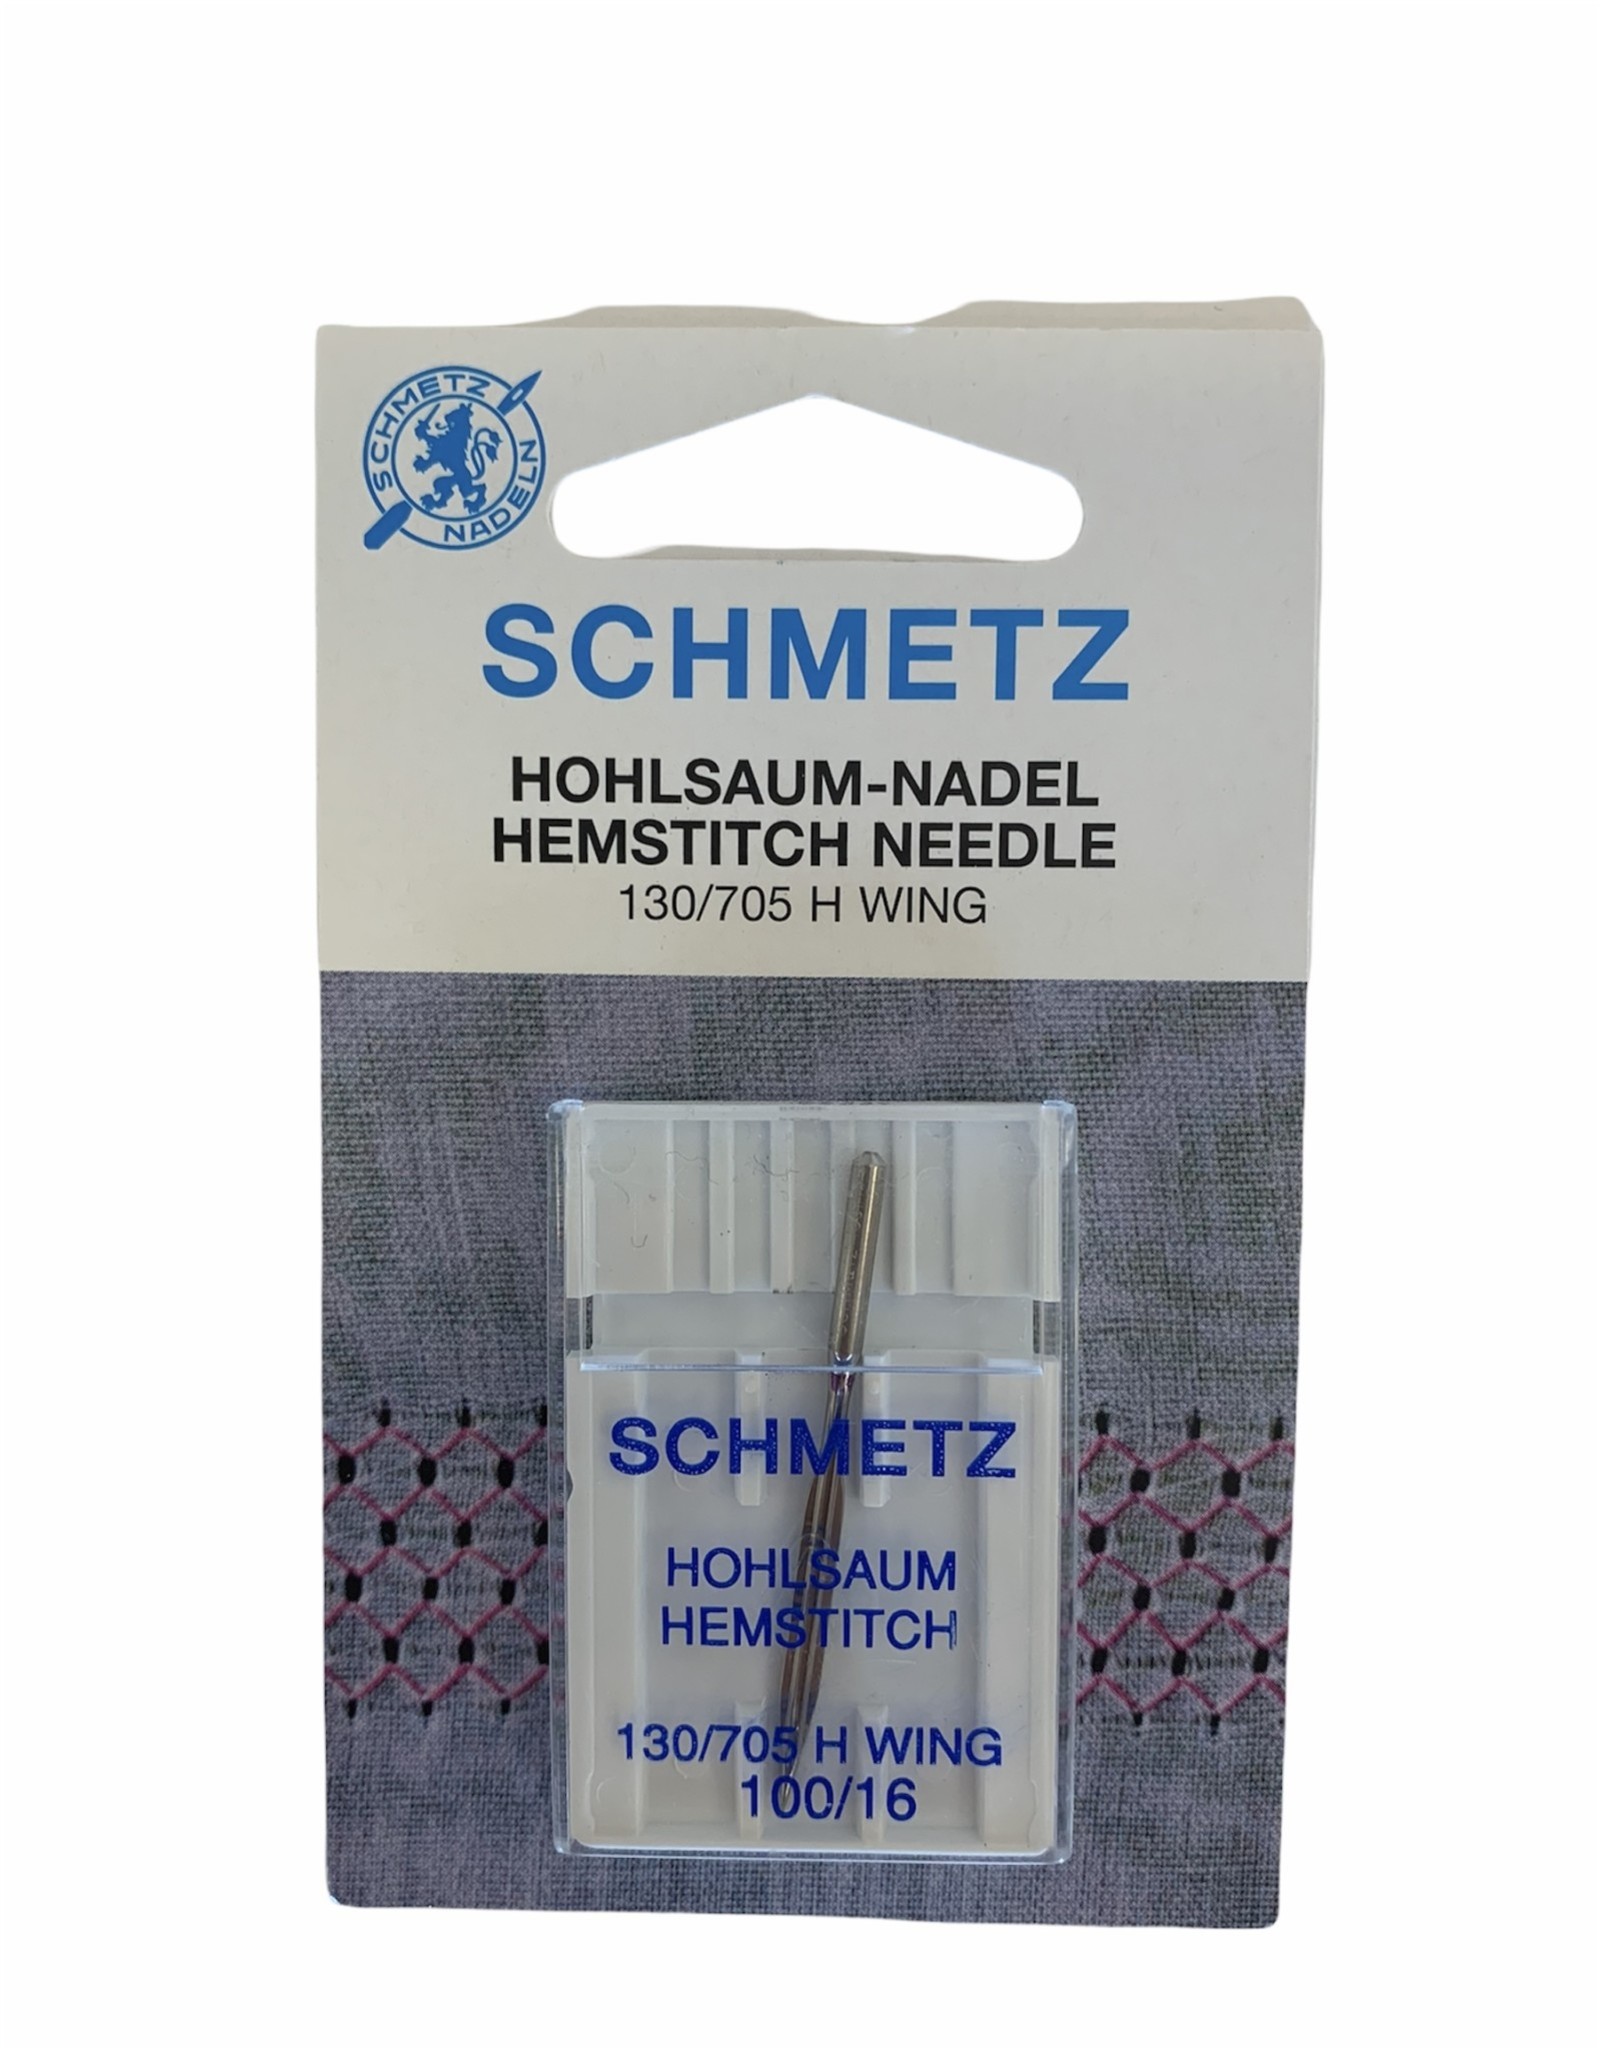 Schmetz Schmetz Hemstitch Needle 100/16, 130/705H WING